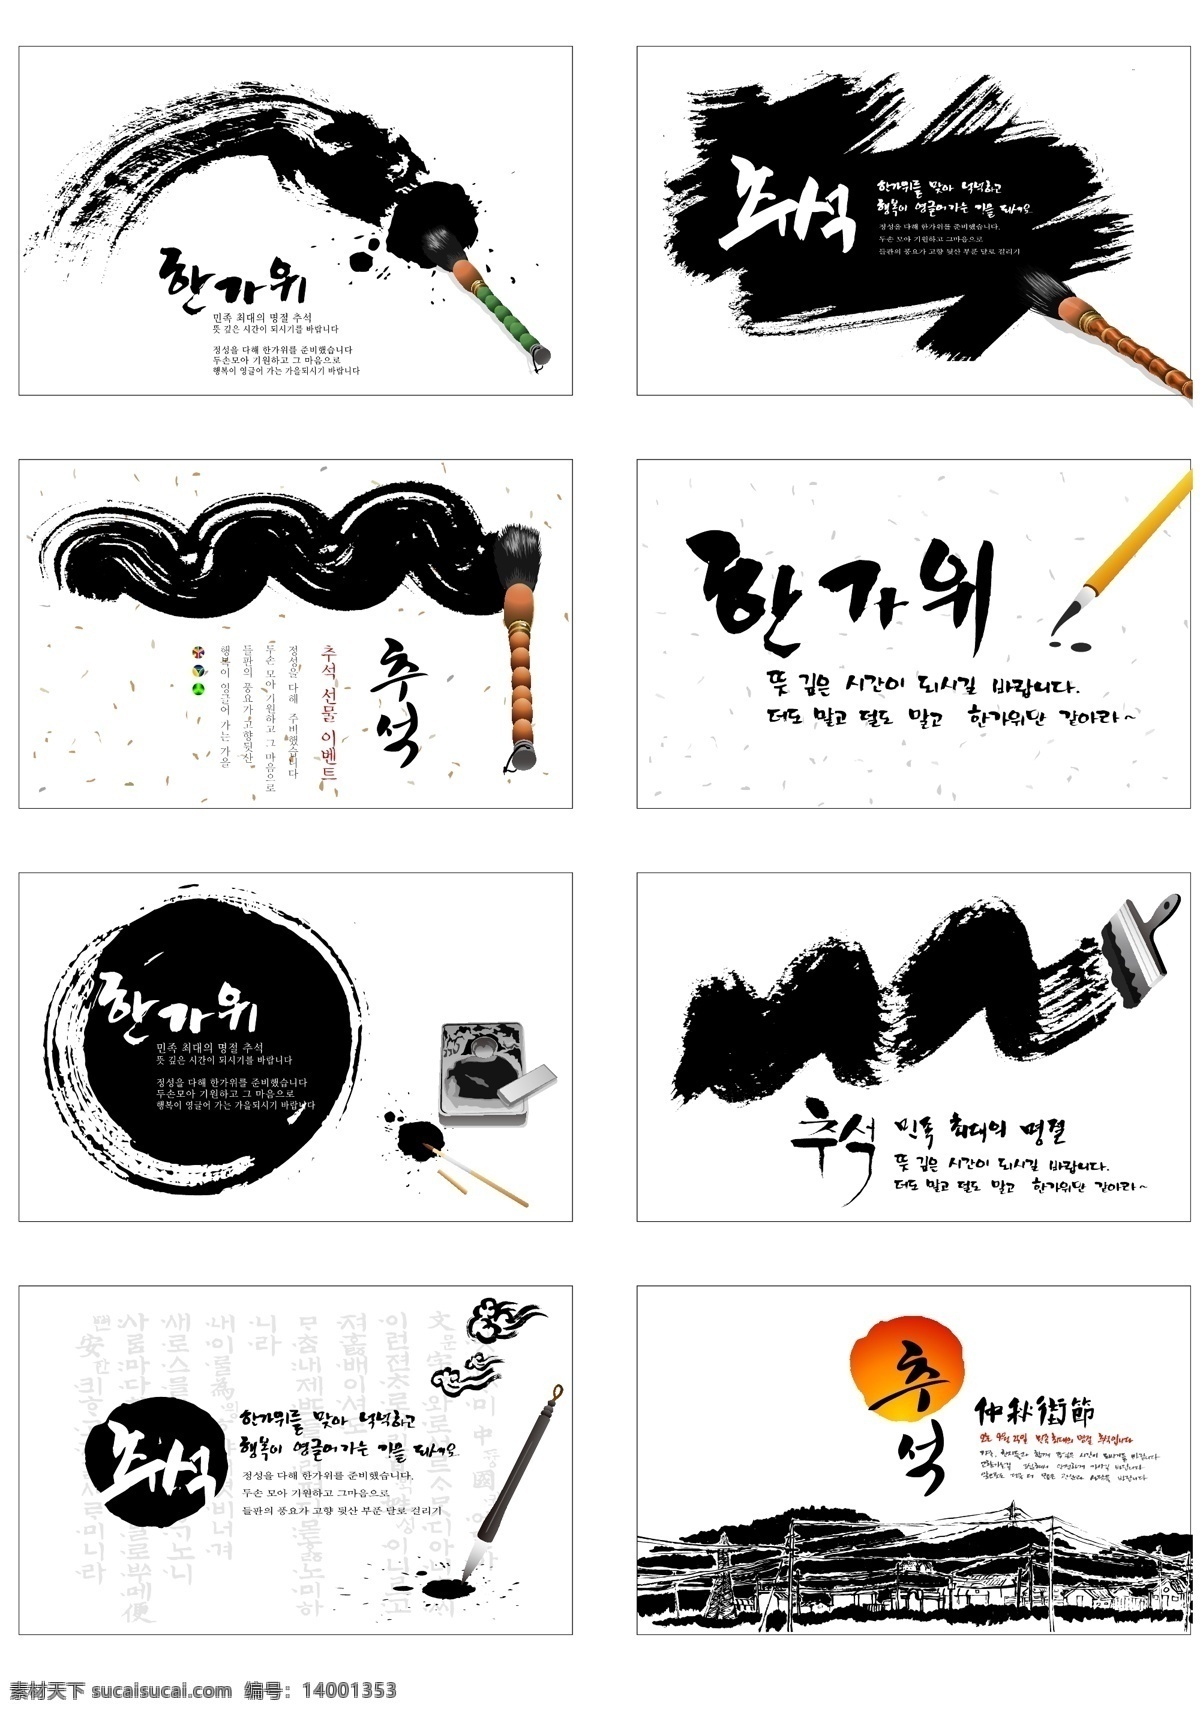 毛笔免费下载 韩国 毛笔 水墨 矢量图 其他矢量图